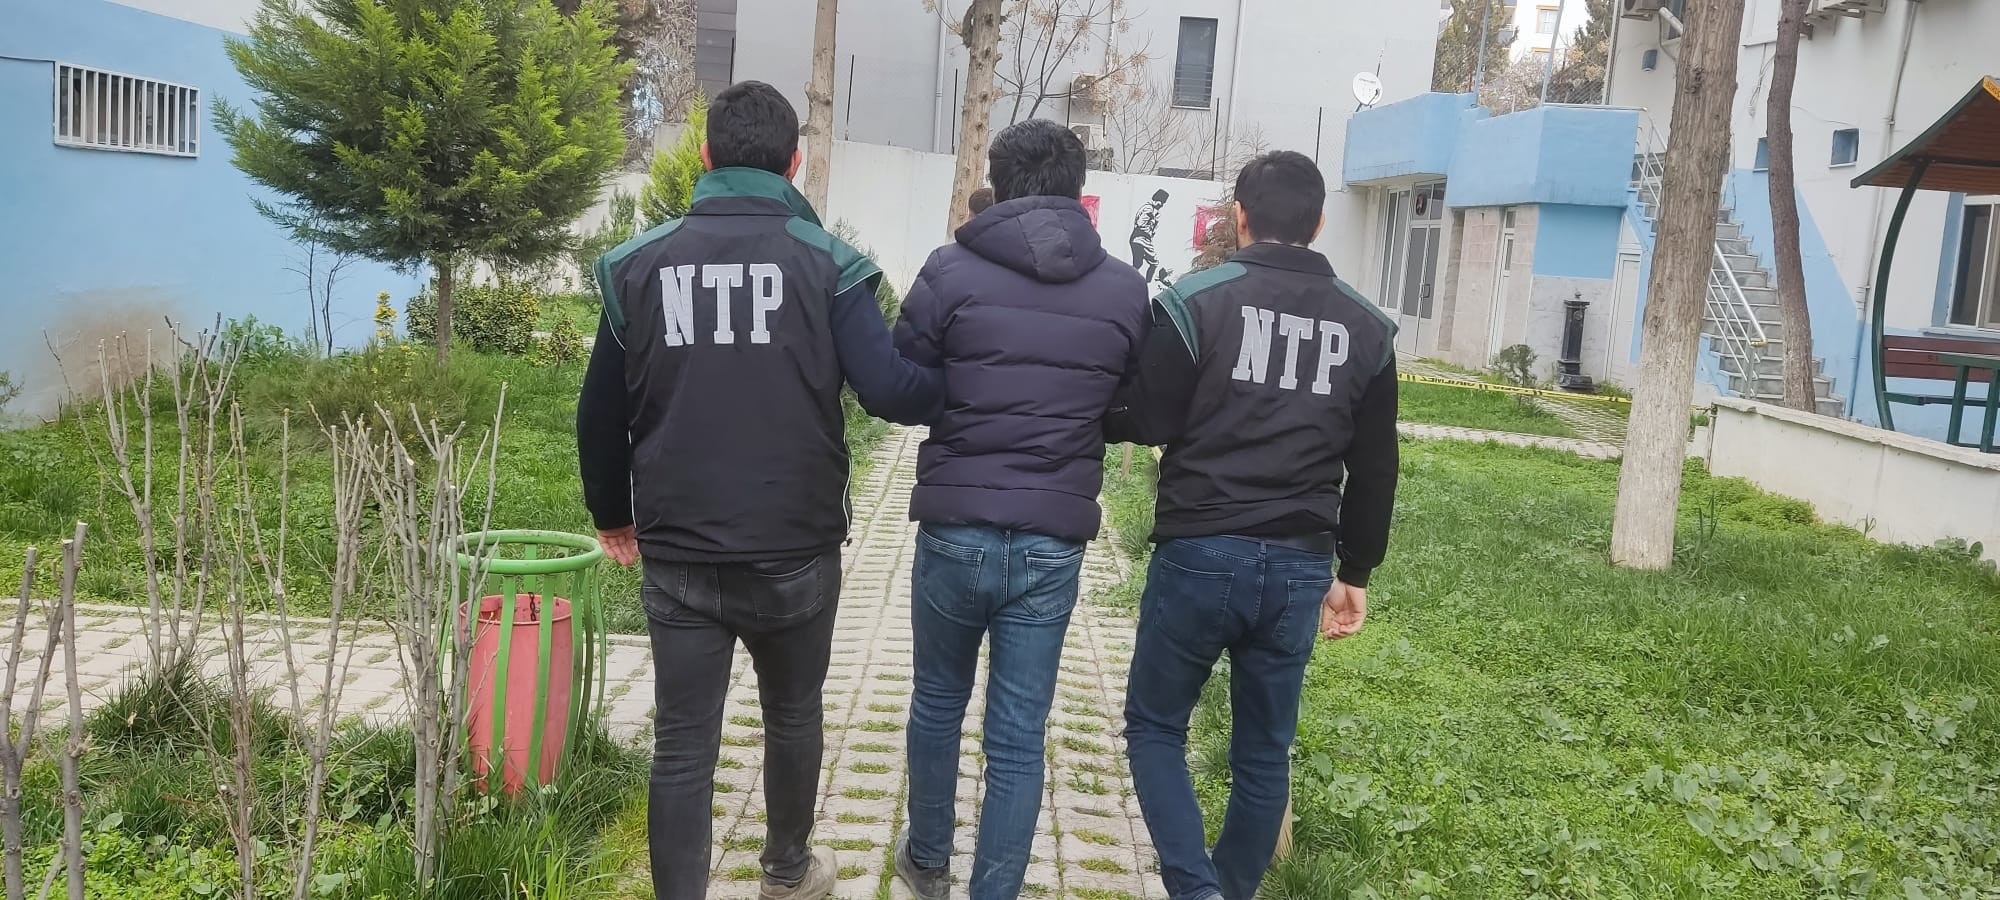 Şanlıurfa’da uyuşturucu operasyonu: 2 tutuklama!